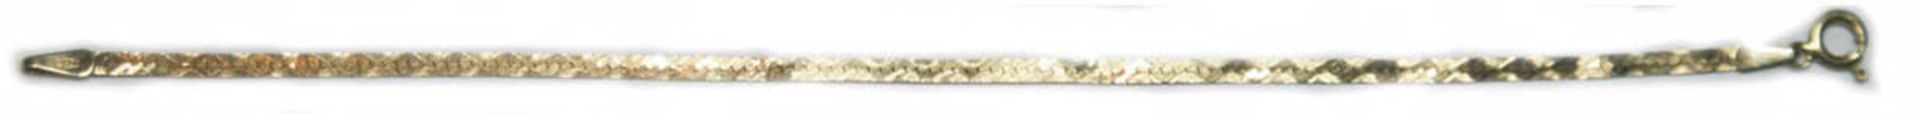 Armband, 333er GG, fein ziselierte Glieder in Strickoptik, 1,7 g, L. 18 cm- - -23.80 % buyer's